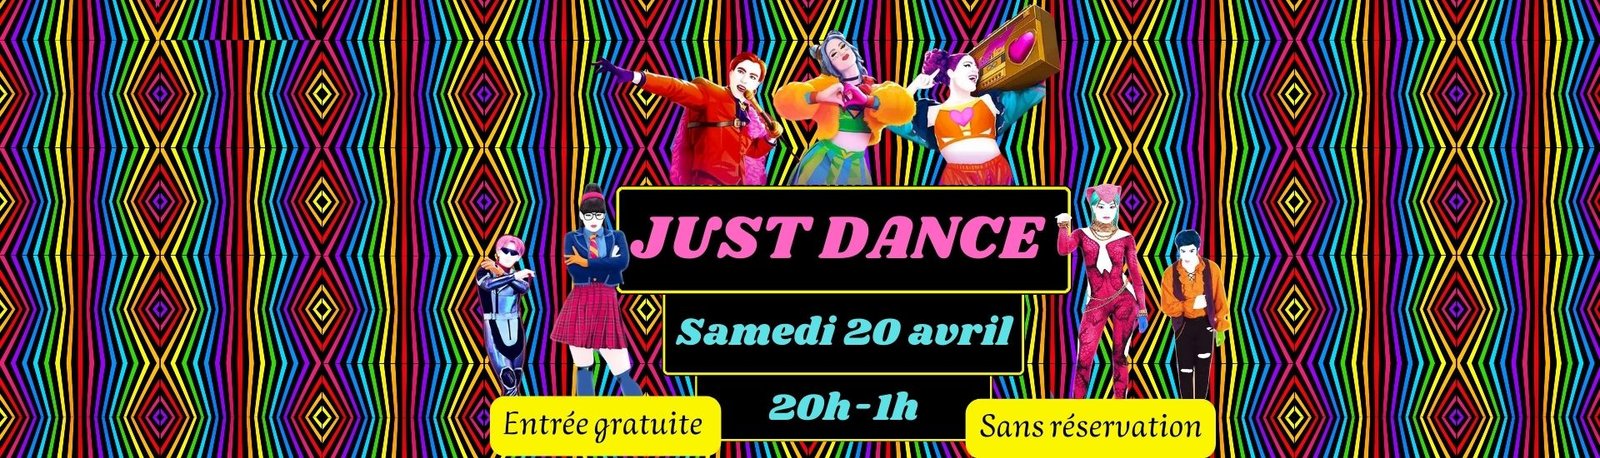 just dance-soirée just dance-soirée dansante-danser-danse-chorégraphies-entrée gratuite-jeu vidéo-soirée montpellier-